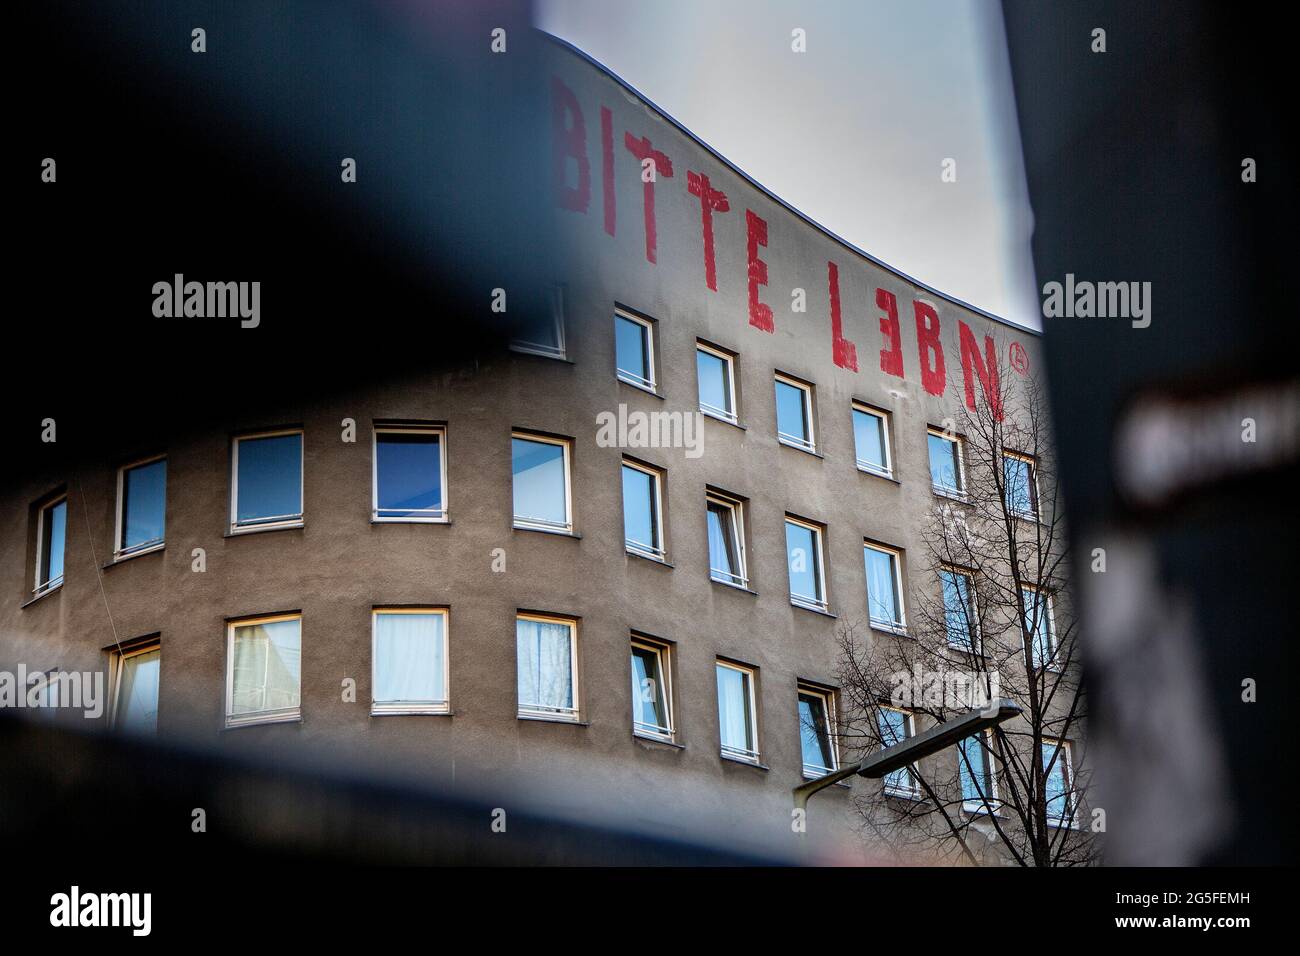 Eine Graffiti auf einem alten Art-Deco-Gebäude in einem Berliner Stadtteil, das für die Gentrifizierung bestimmt ist, lautet „Bitte Lebn“, übersetzt mit „Let live“. Stockfoto